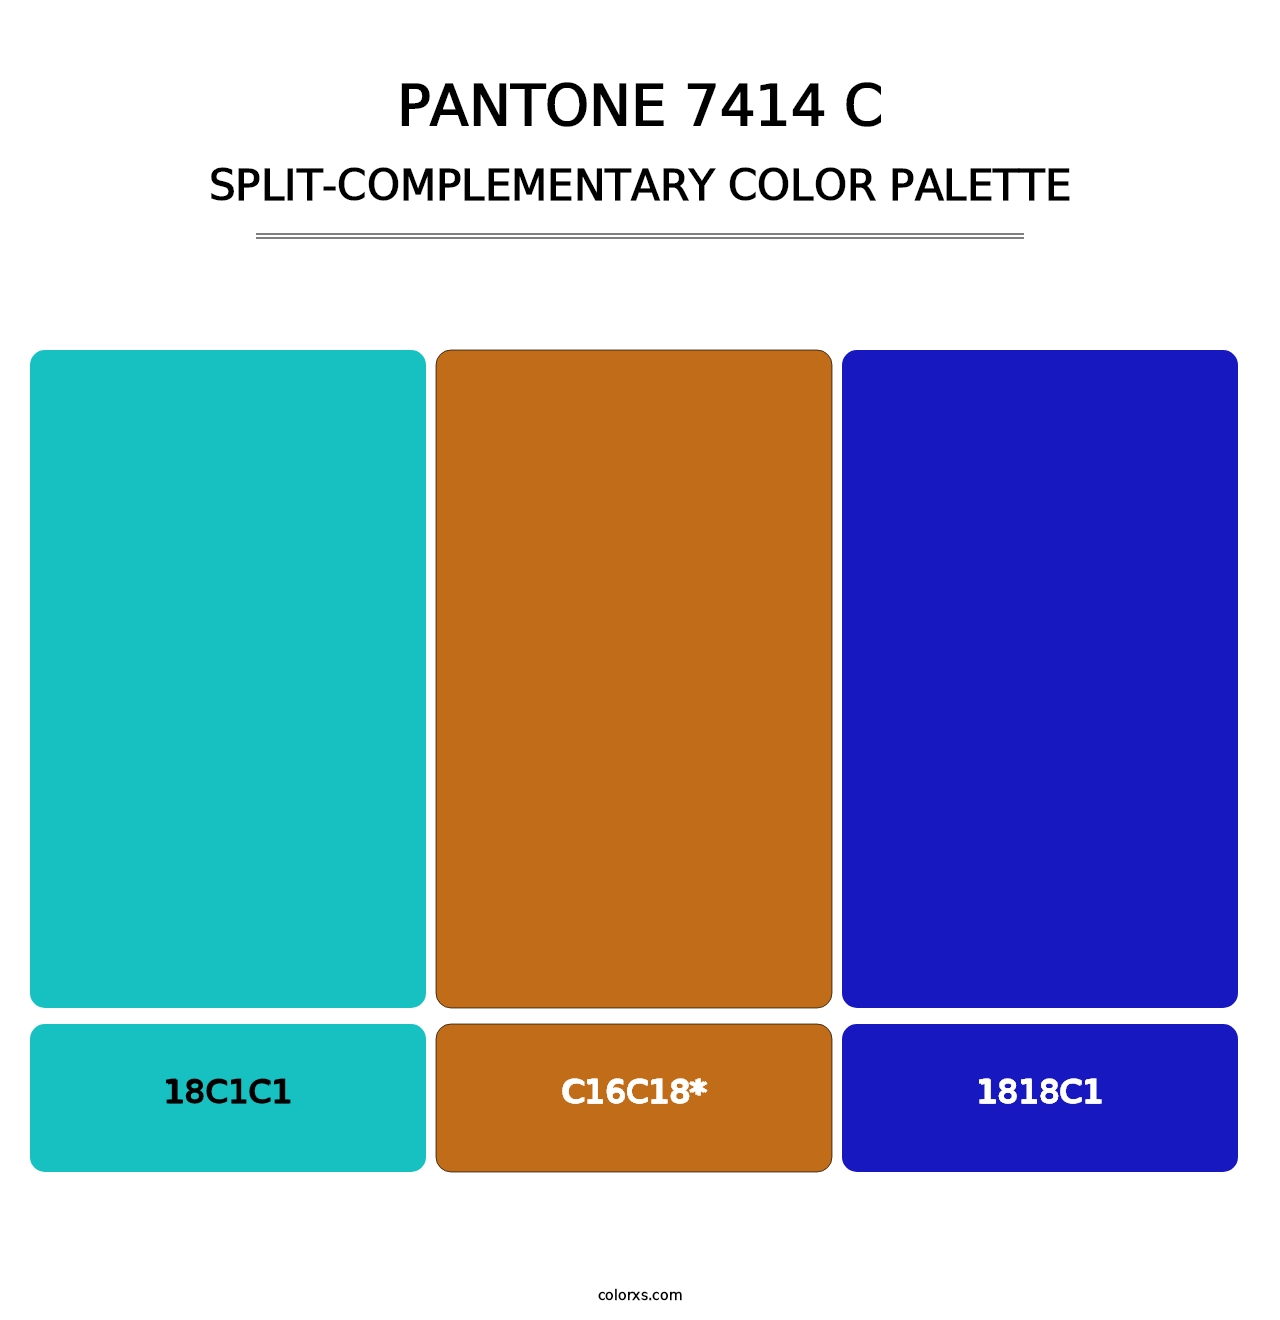 PANTONE 7414 C - Split-Complementary Color Palette